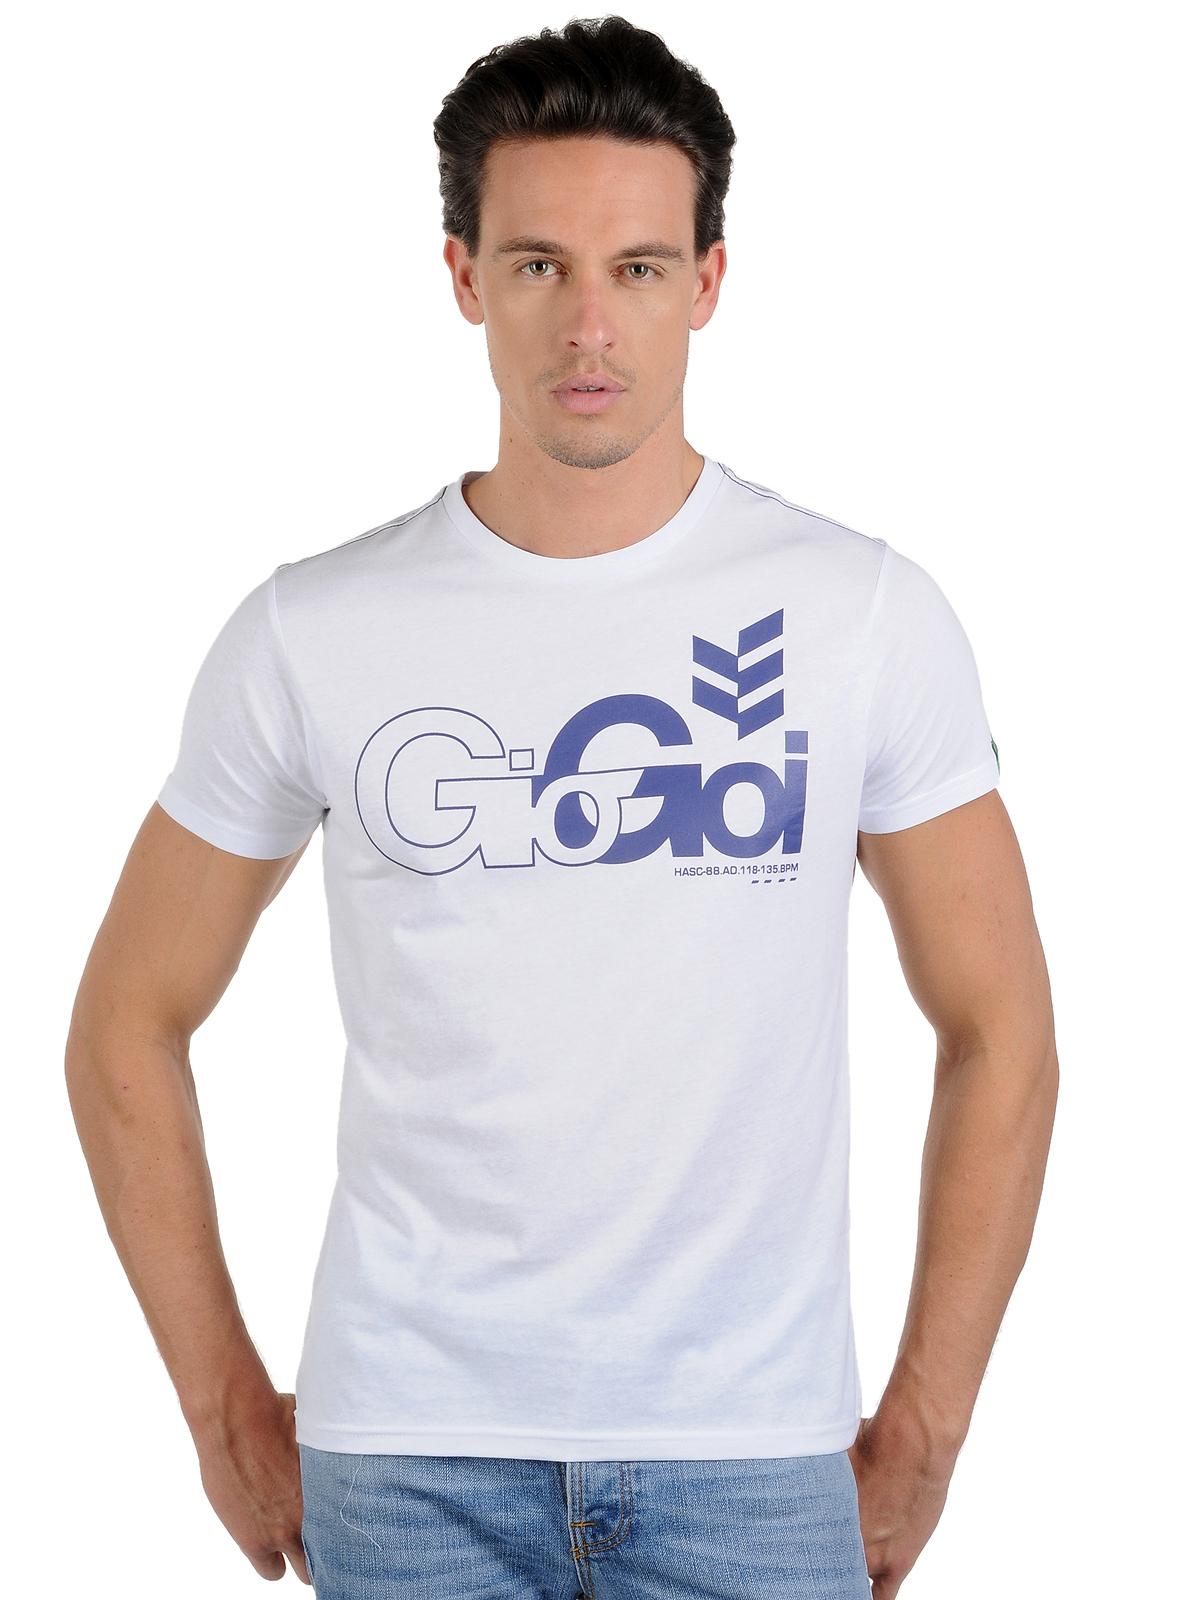 Foto Gio-Goi Camiseta blanco XL